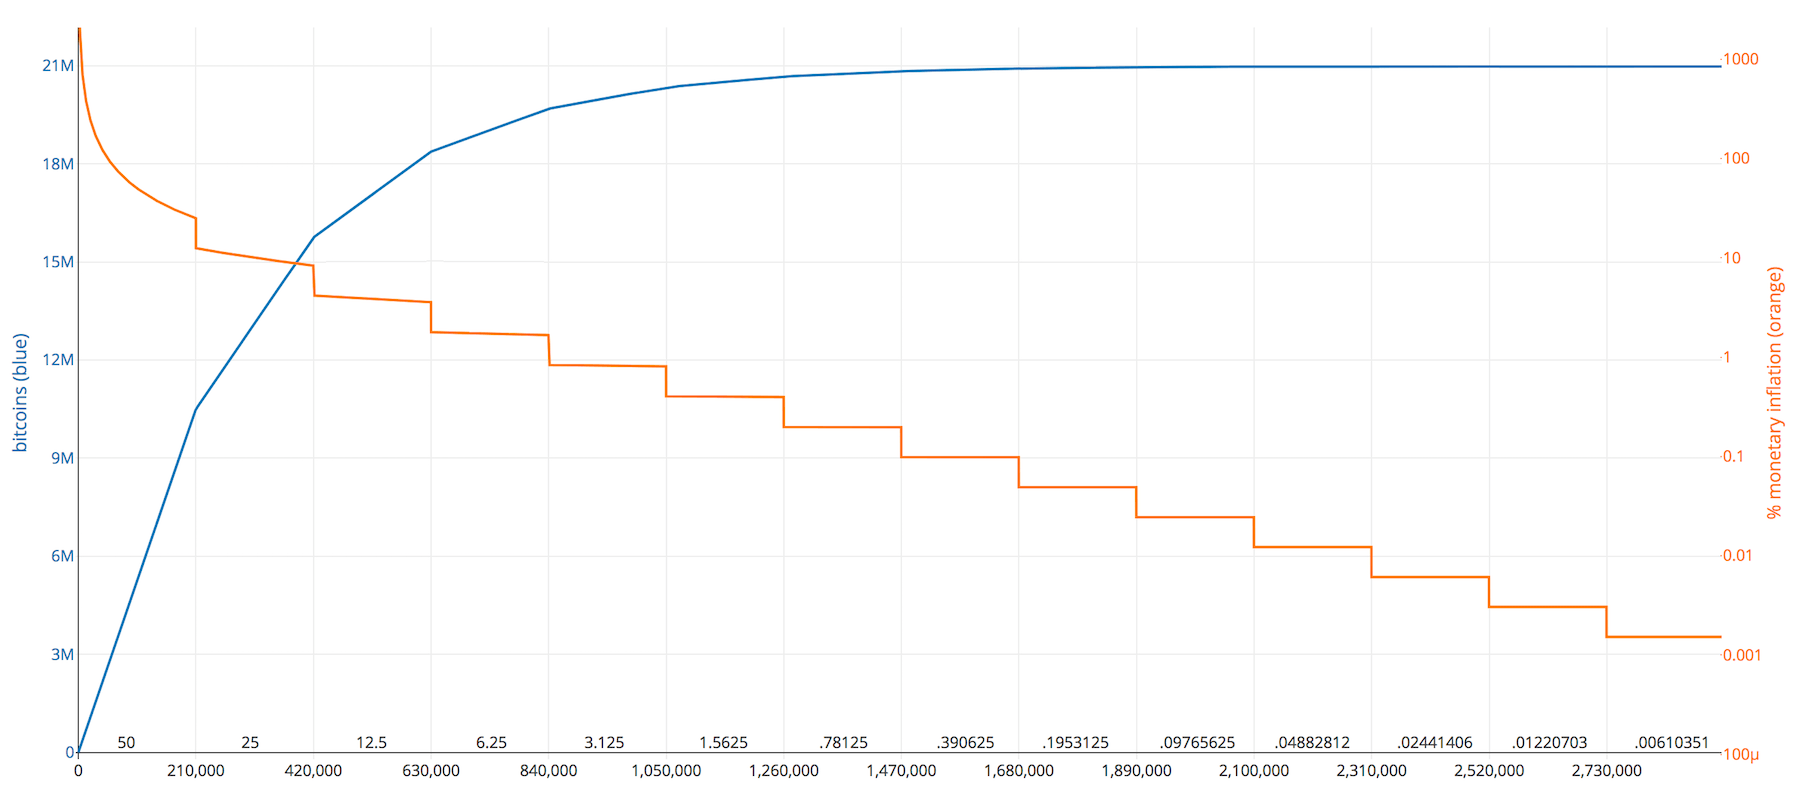 graphique représentant le nombre de bitcoins et les récompenses par bloc selon le nombre de blocs minés